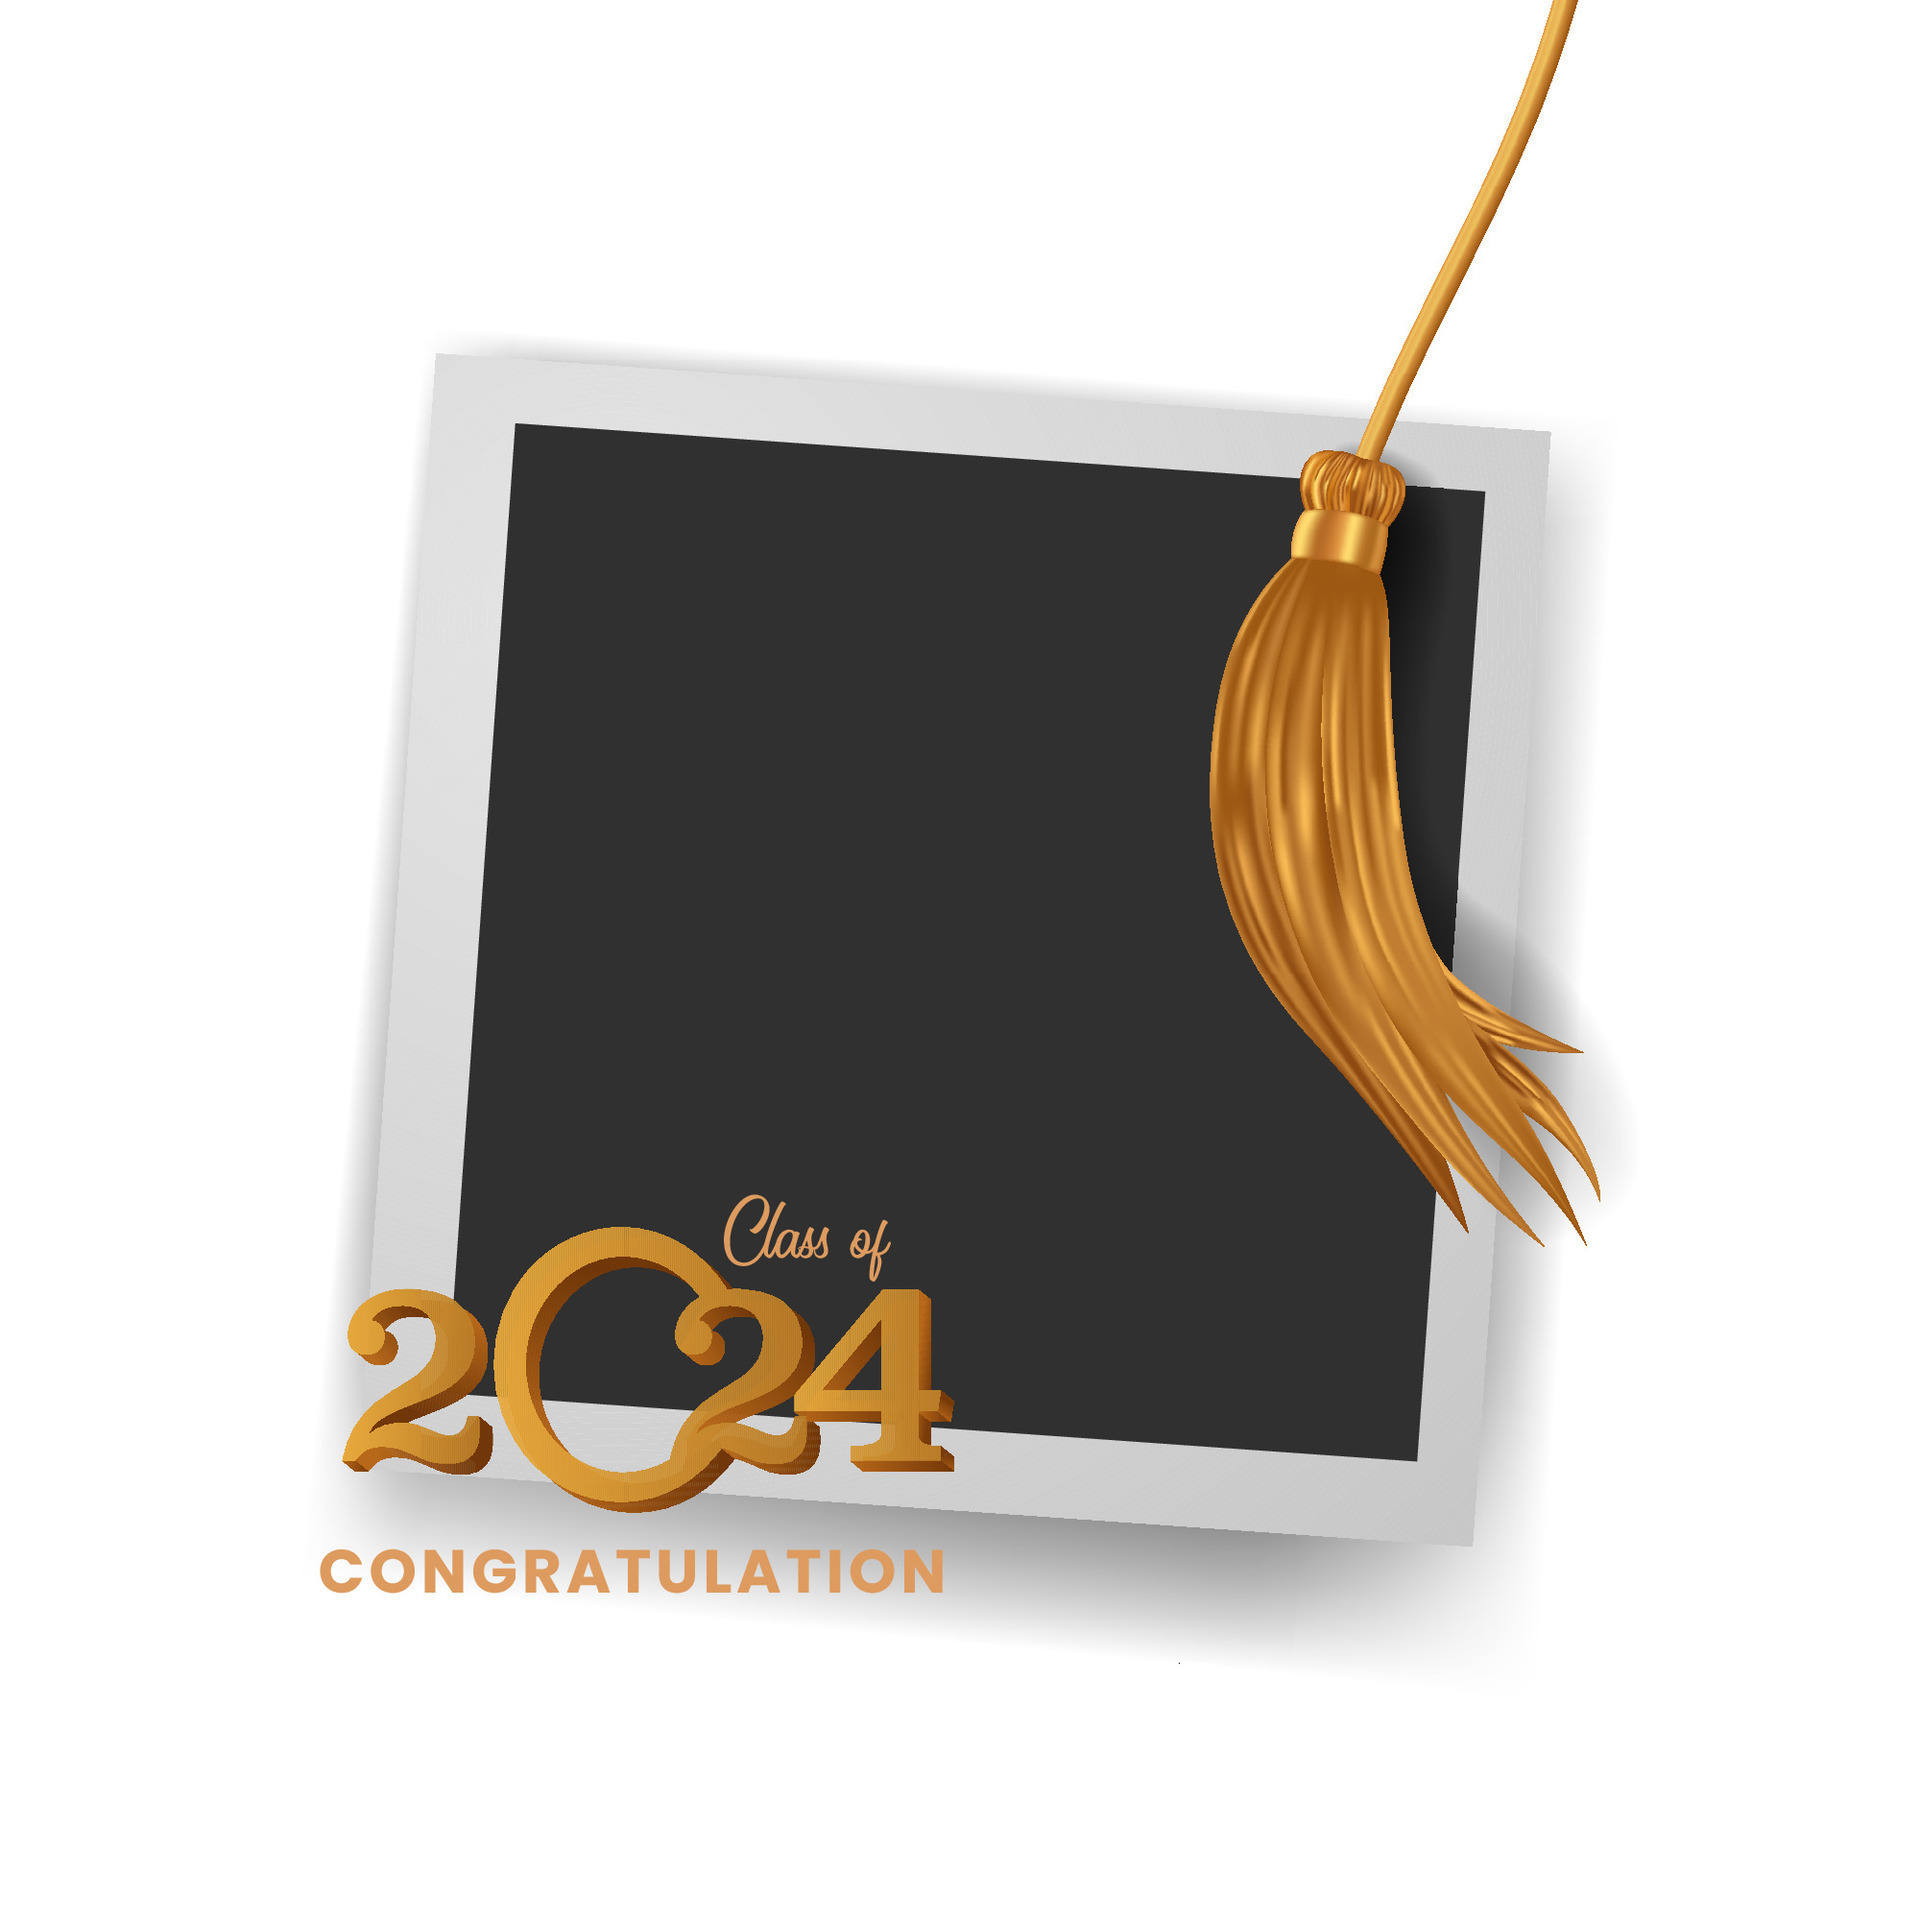 2024 Graduation Tassel Images – Browse 241 Stock Photos, Vectors